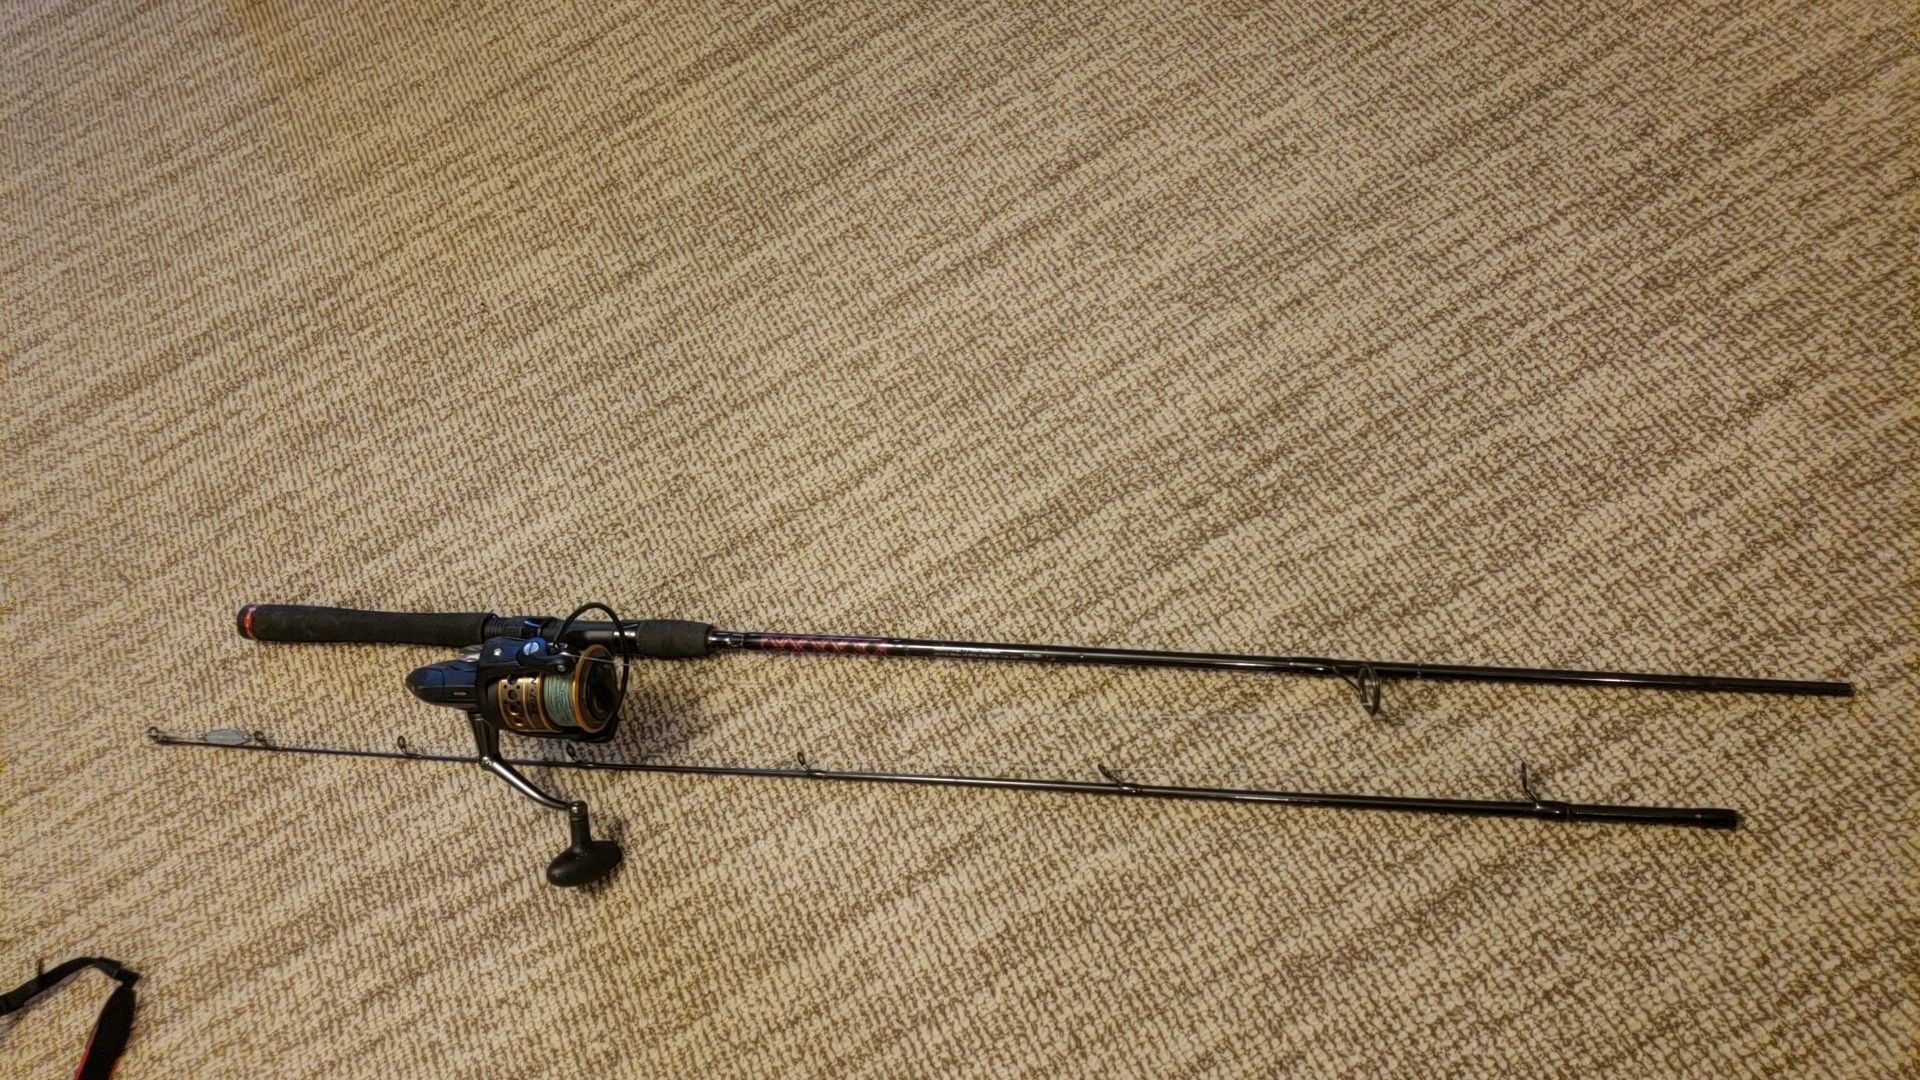 Penn fishing rod and reel (best offer)